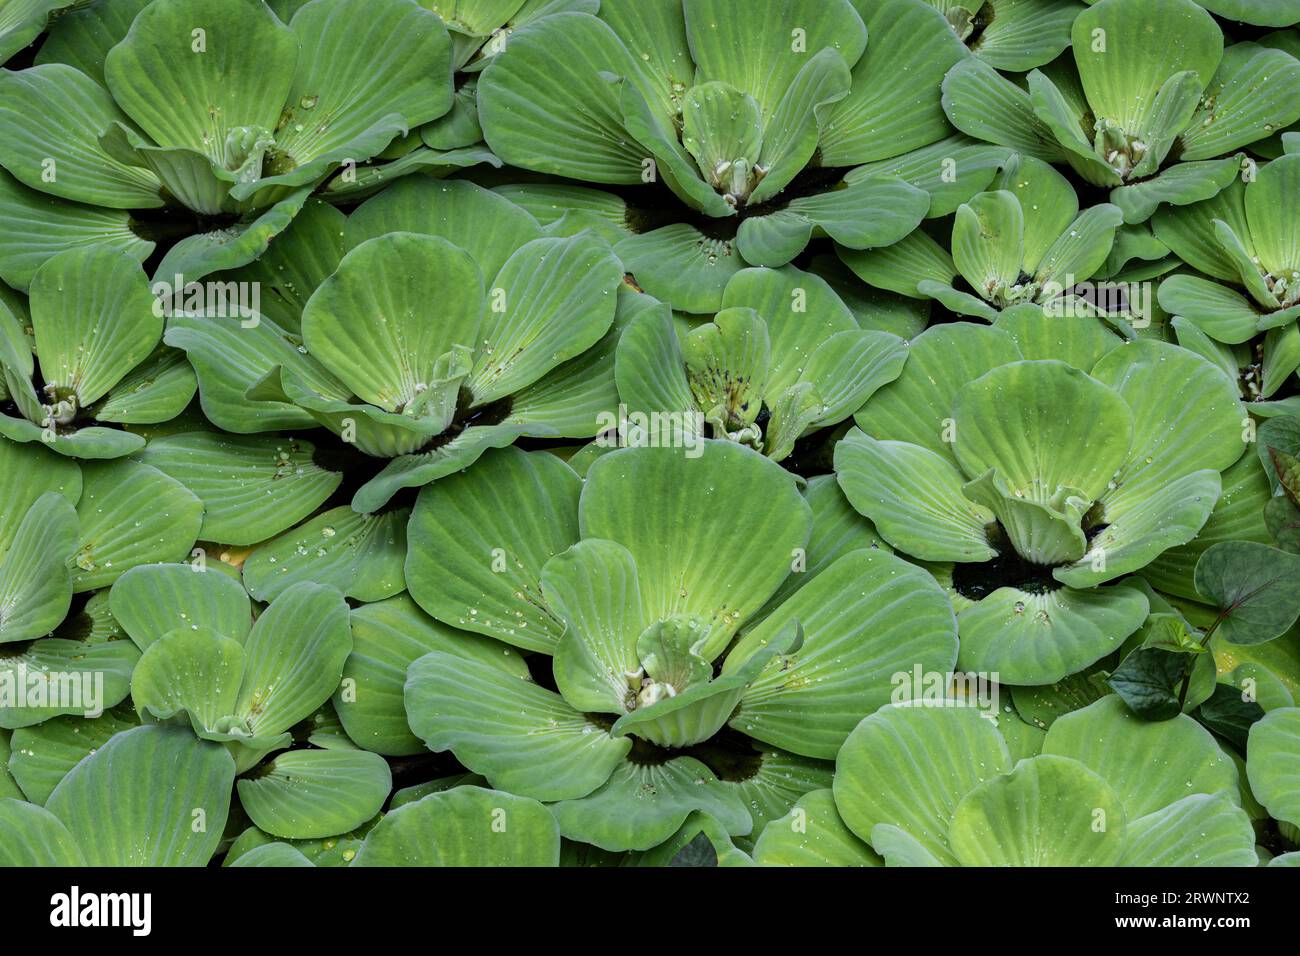 Primo piano della lattuga d'acqua (Pistia stratiotes) che scorre sulla superficie di uno stagno in St. Louis, Missouri. Gocce d'acqua sui petali. Foto Stock